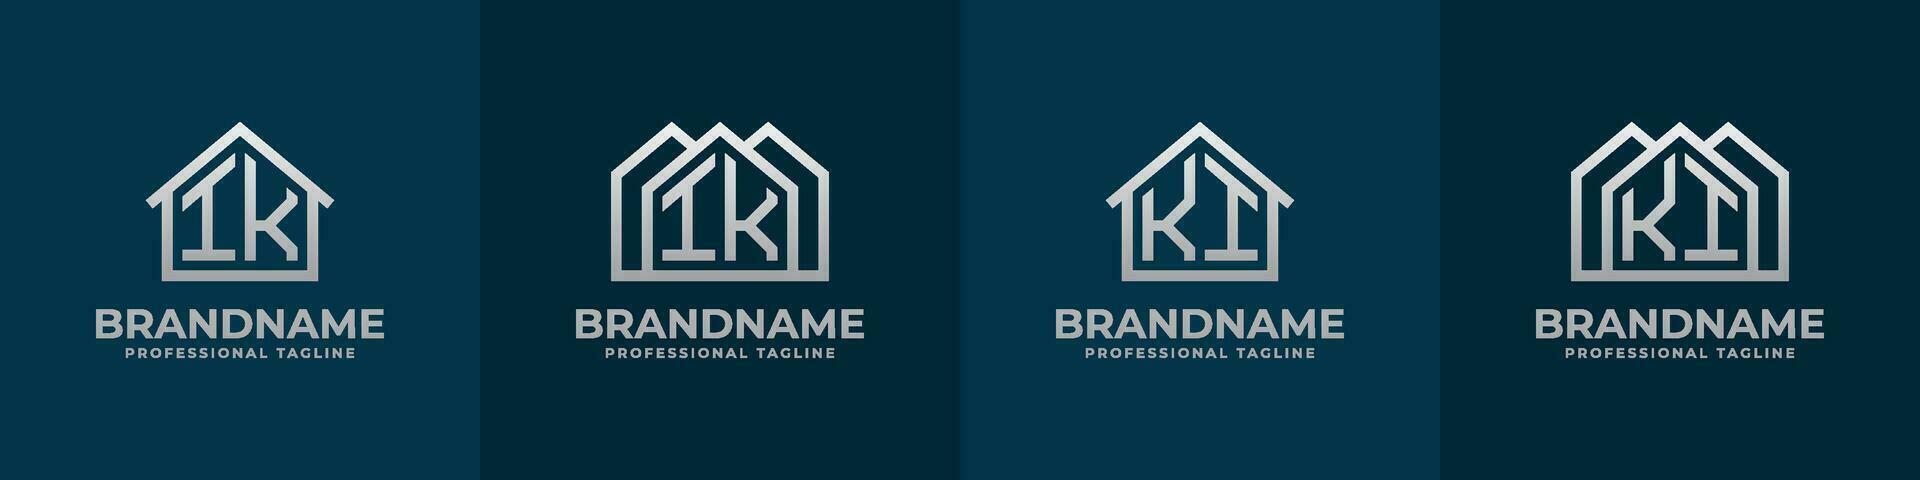 carta ik e ki casa logotipo definir. adequado para qualquer o negócio relacionado para casa, real Estado, construção, interior com ik ou ki iniciais. vetor